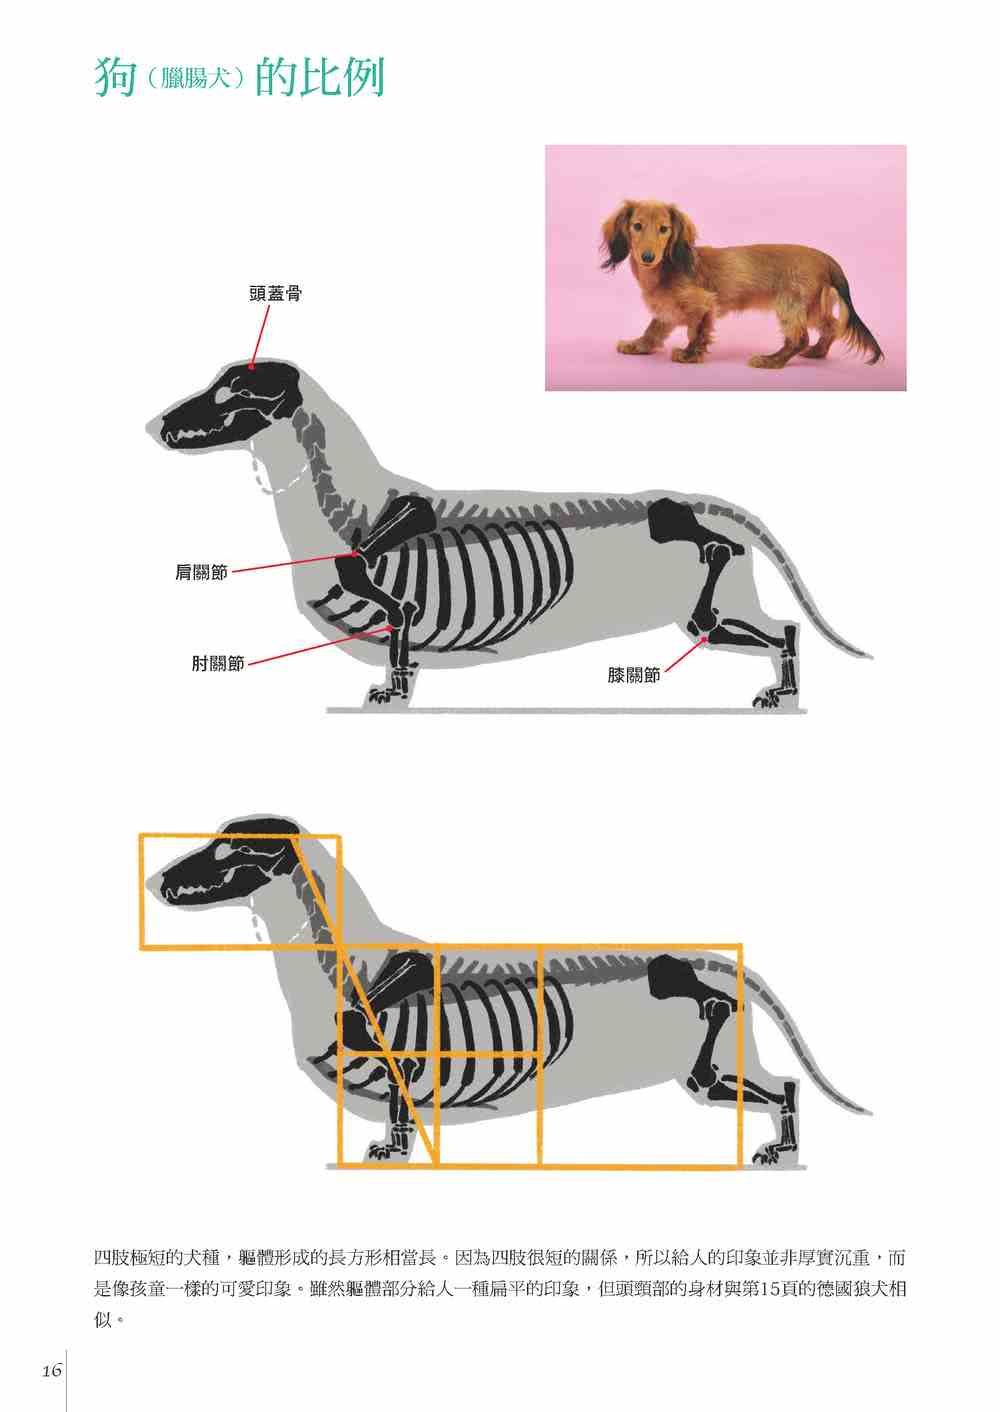 透過素描學習 : 動物+人體比較解剖學